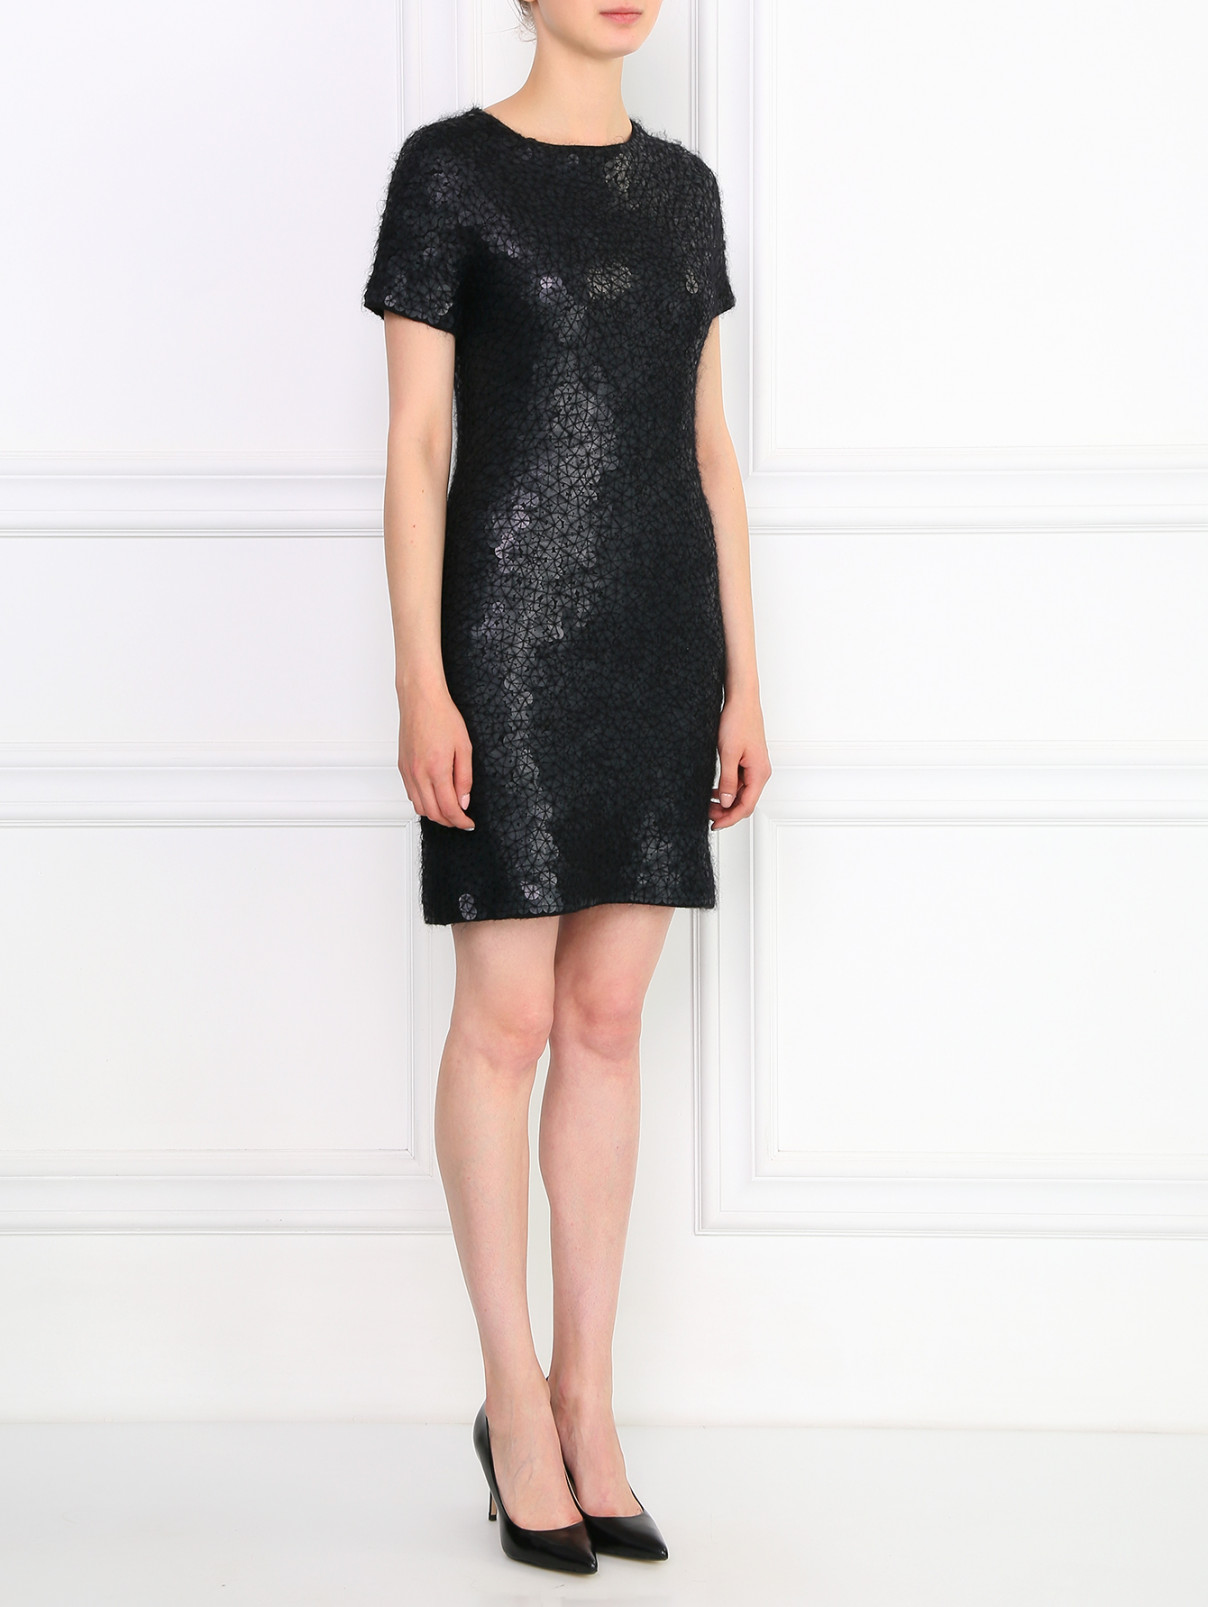 Платье из кашемира и шелка, декорированное пайетками Donna Karan  –  Модель Общий вид  – Цвет:  Черный